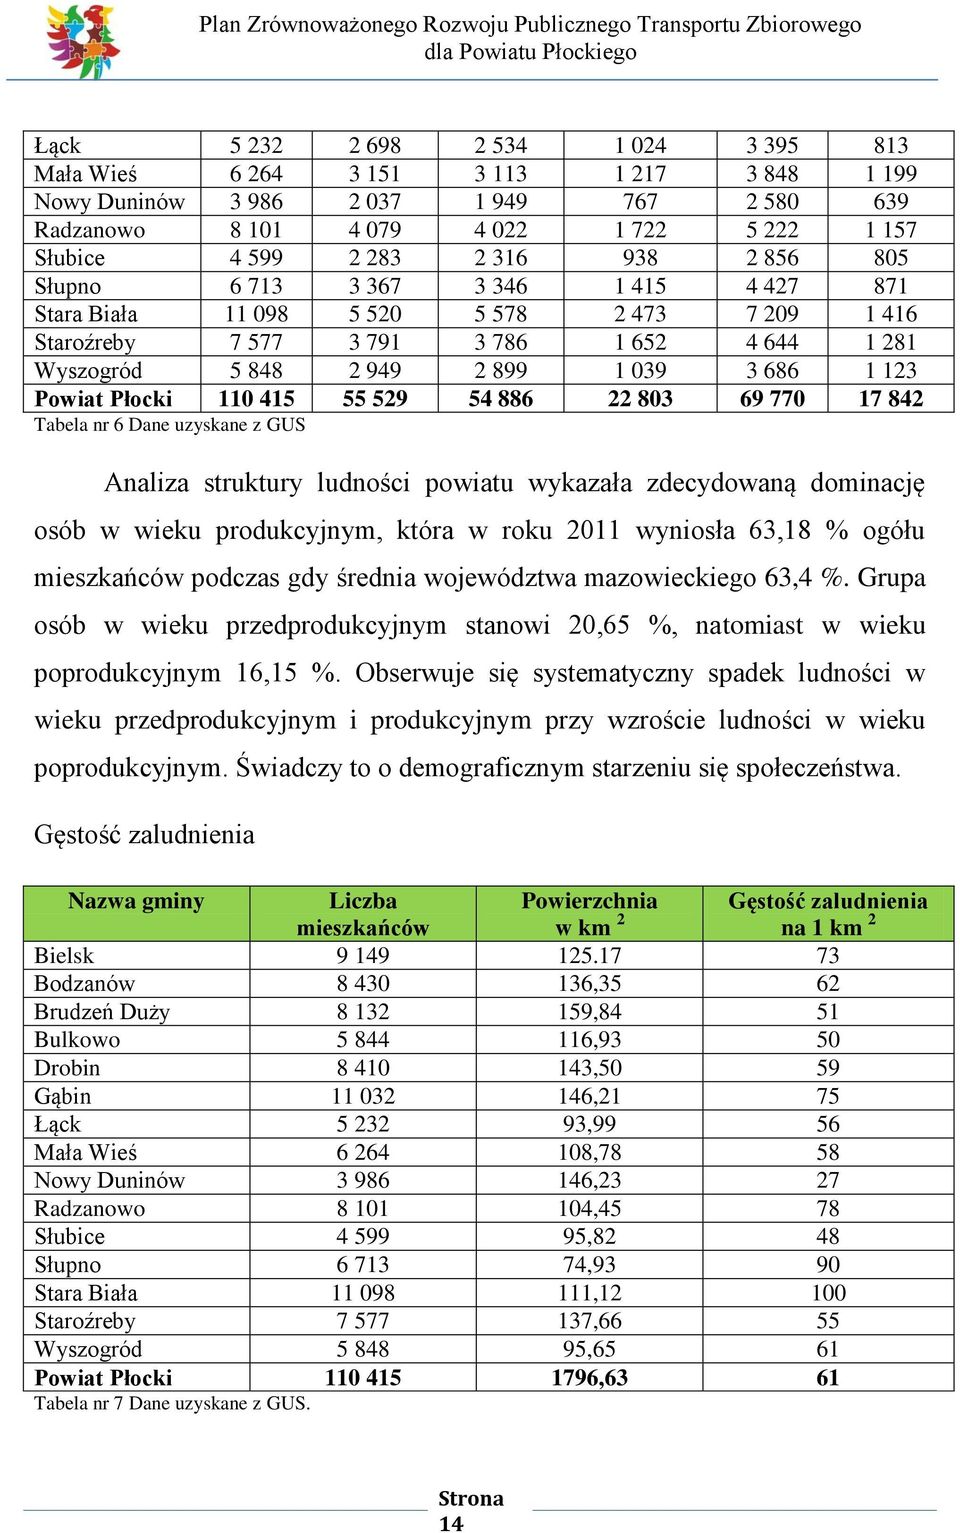 123 Powiat Płocki 110 415 55 529 54 886 22 803 69 770 17 842 Tabela nr 6 Dane uzyskane z GUS Analiza struktury ludności powiatu wykazała zdecydowaną dominację osób w wieku produkcyjnym, która w roku